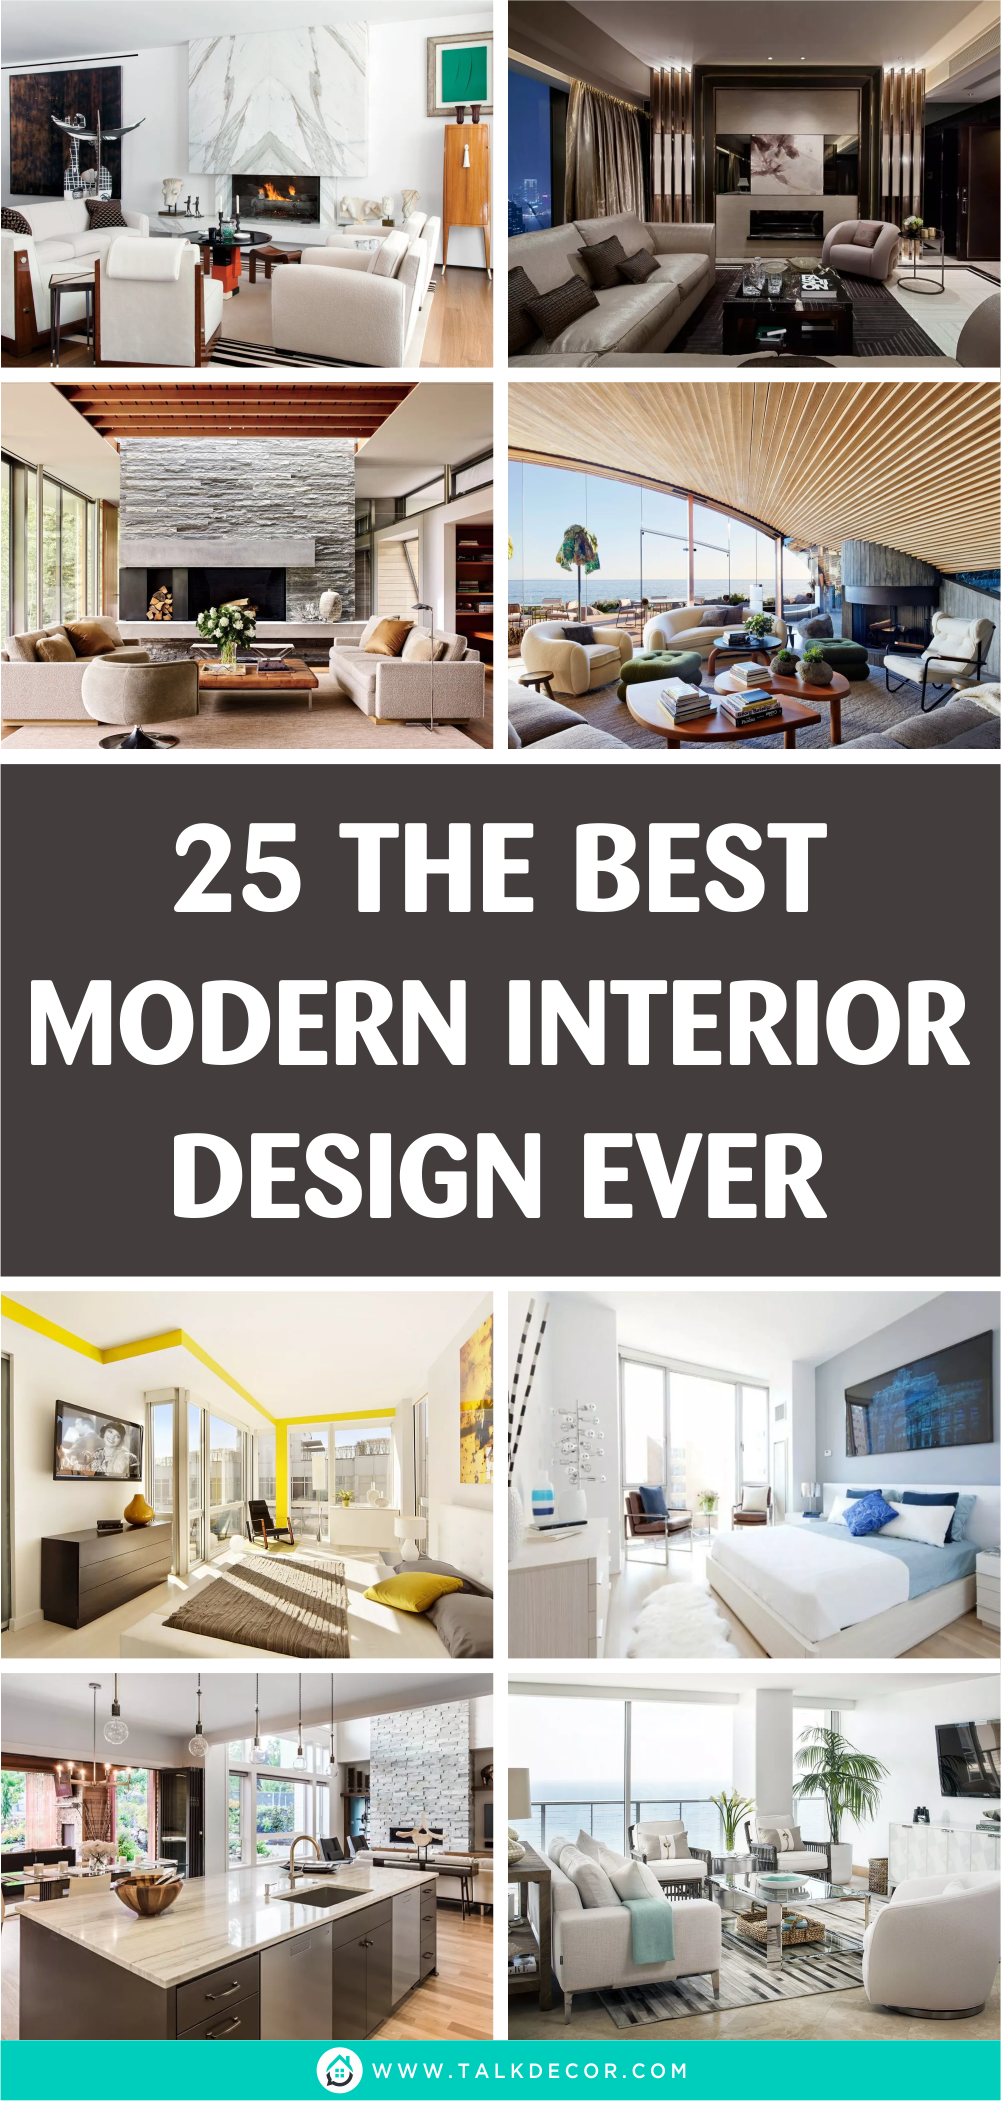 25 The Best Modern Interior Design Ever - Talkdecor